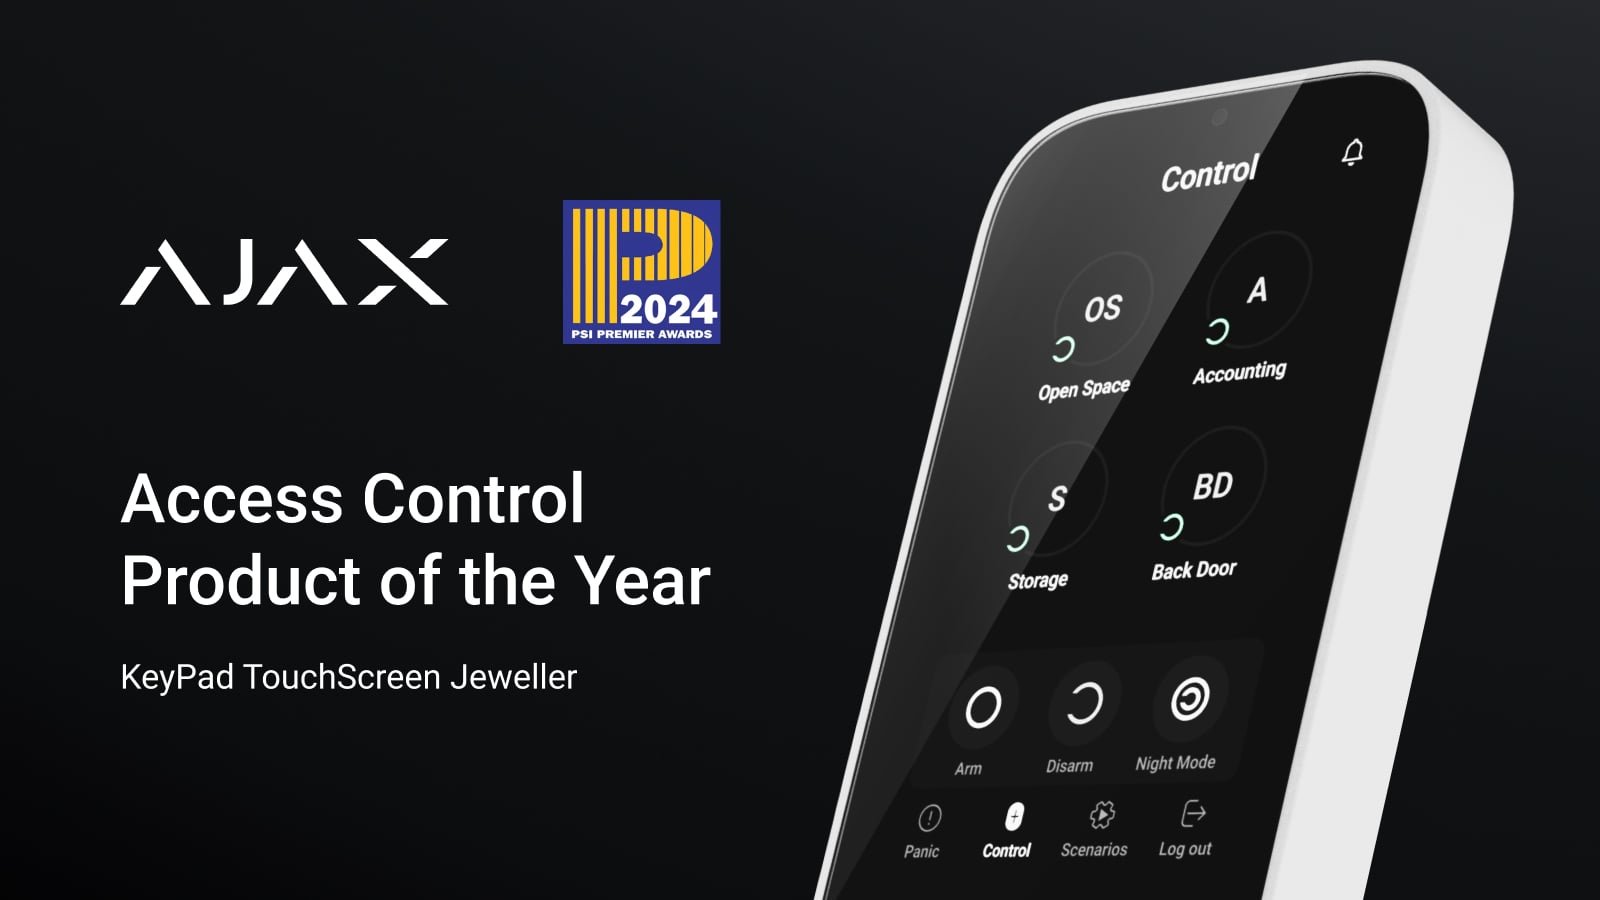 El KeyPad TouchScreen Jeweller gana el premio PSI Premier Awards 2024 como Producto de control de acceso del año